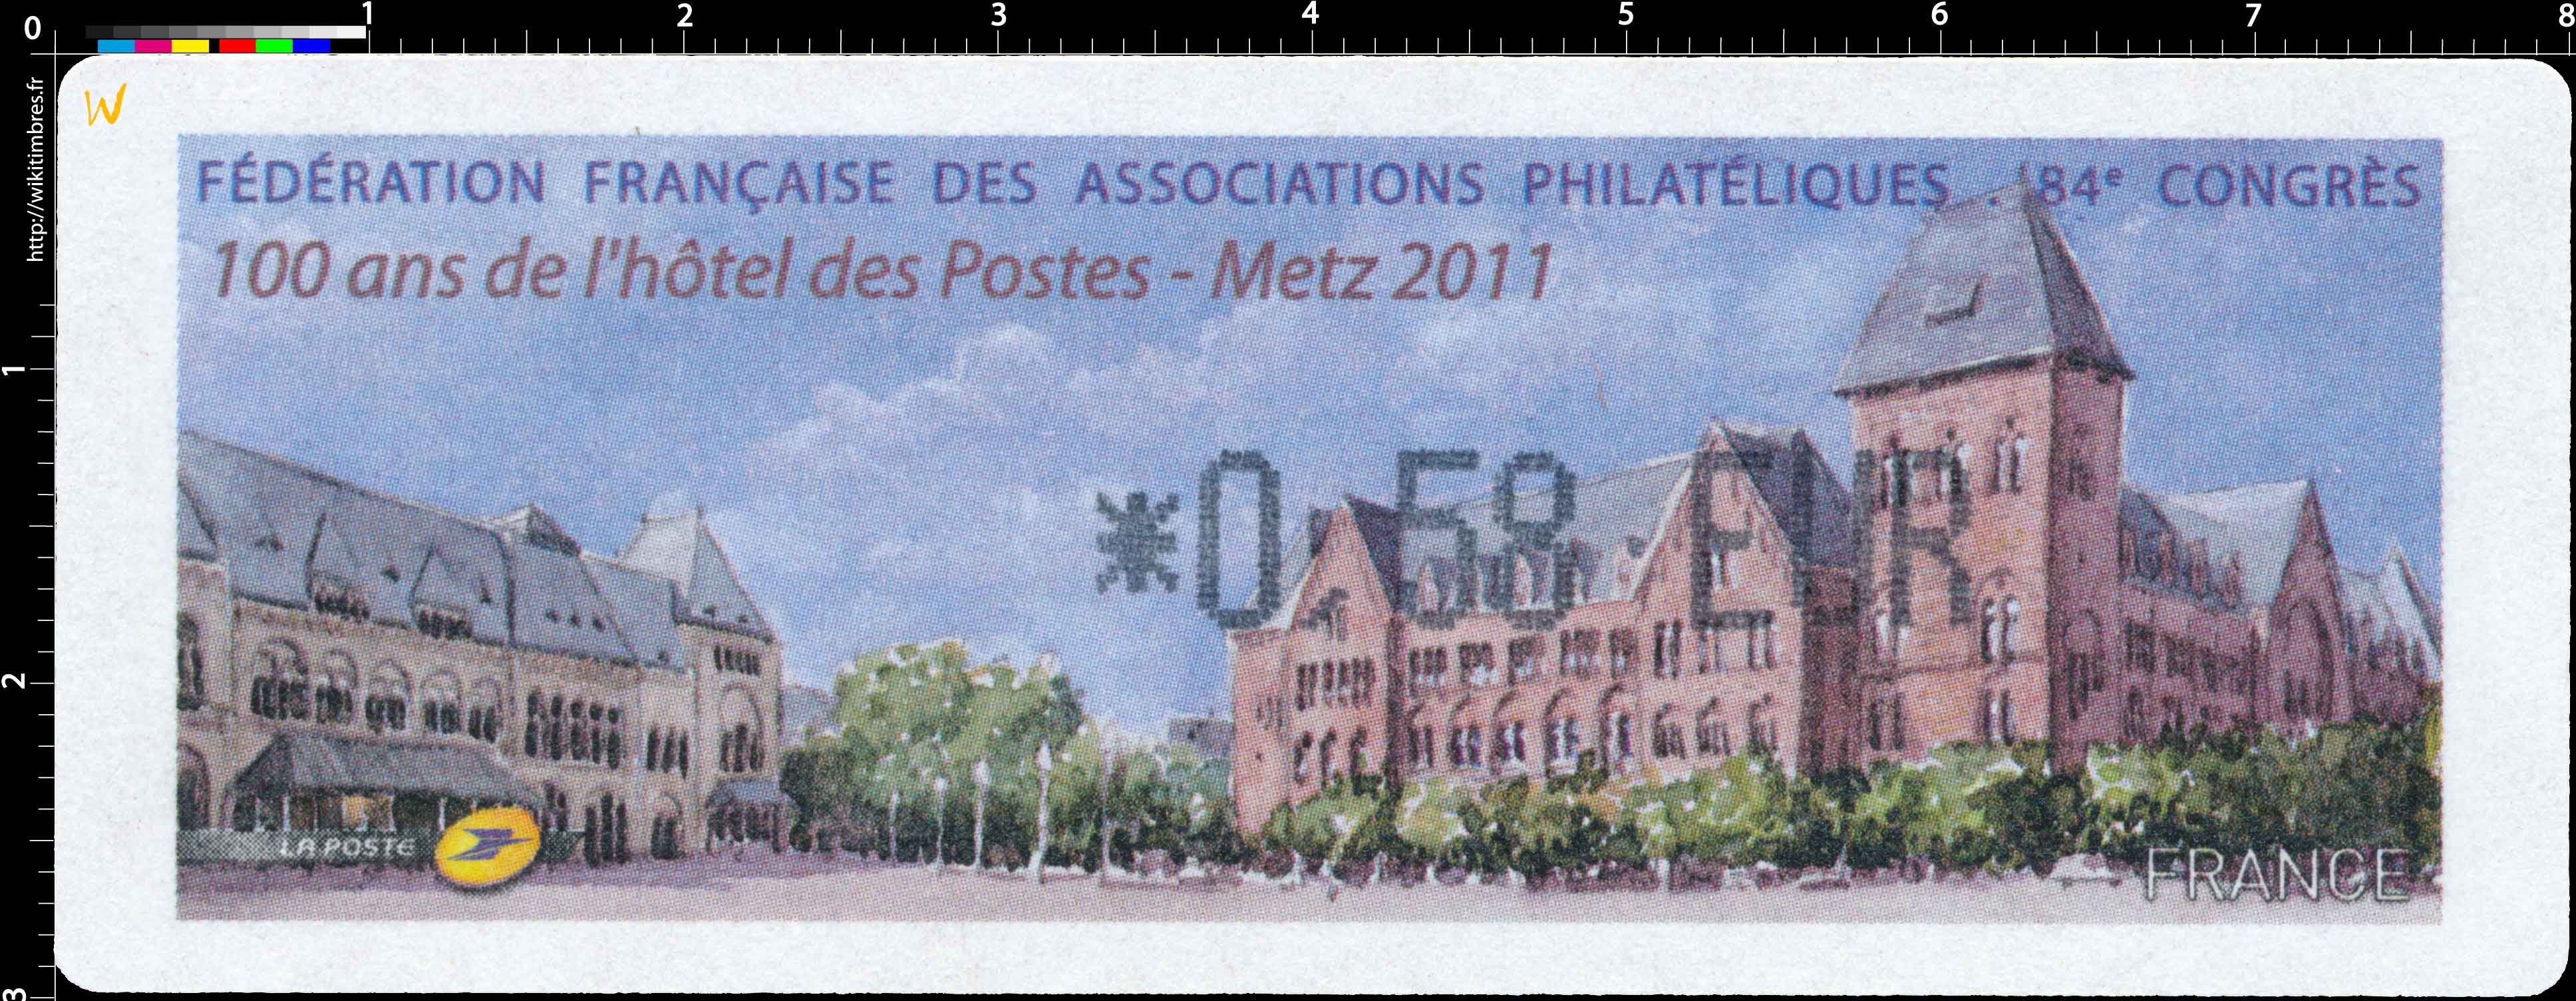 2011 FÉDÉRATION FRANCAISE DES ASSOCIATIONS PHILATÉLIQUES 84e CONGRES 100 ans de l'hôtel des Postes - Metz